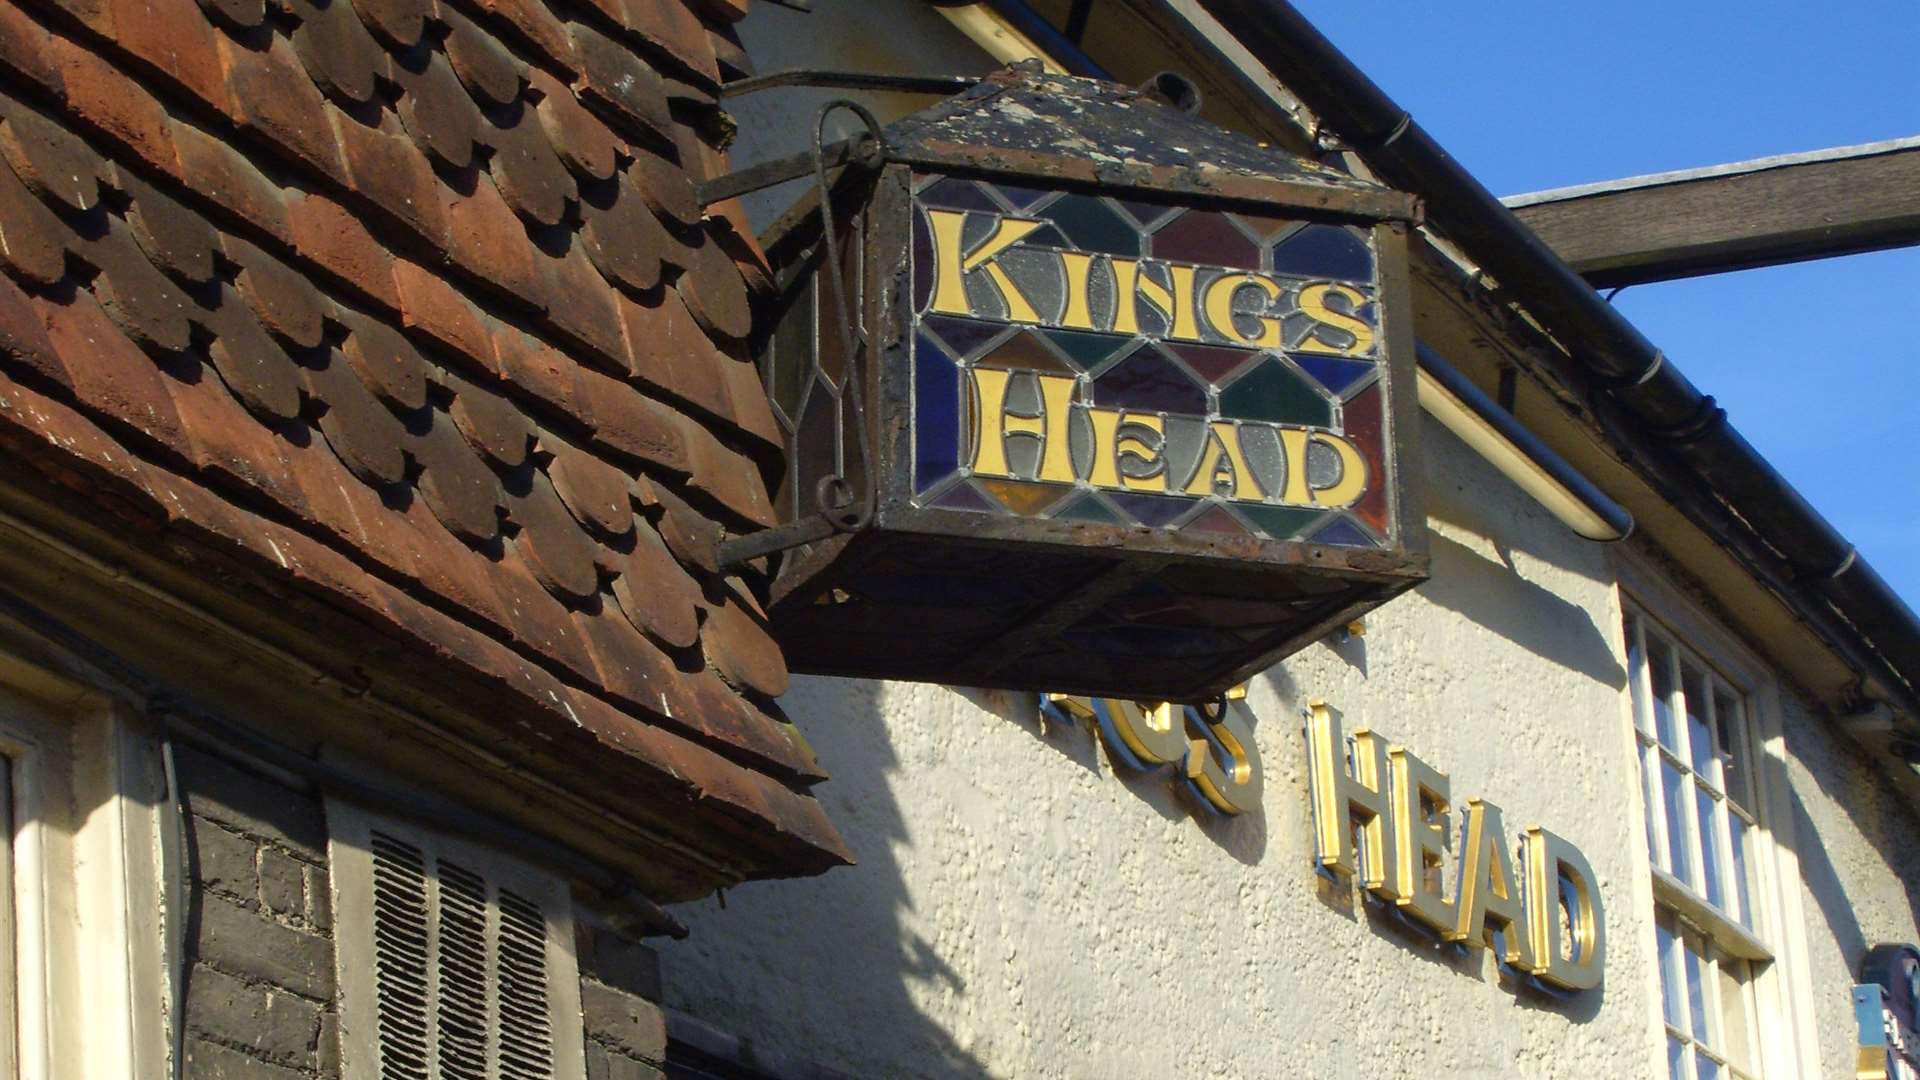 The Kings Head pub, High Street, Staplehurst